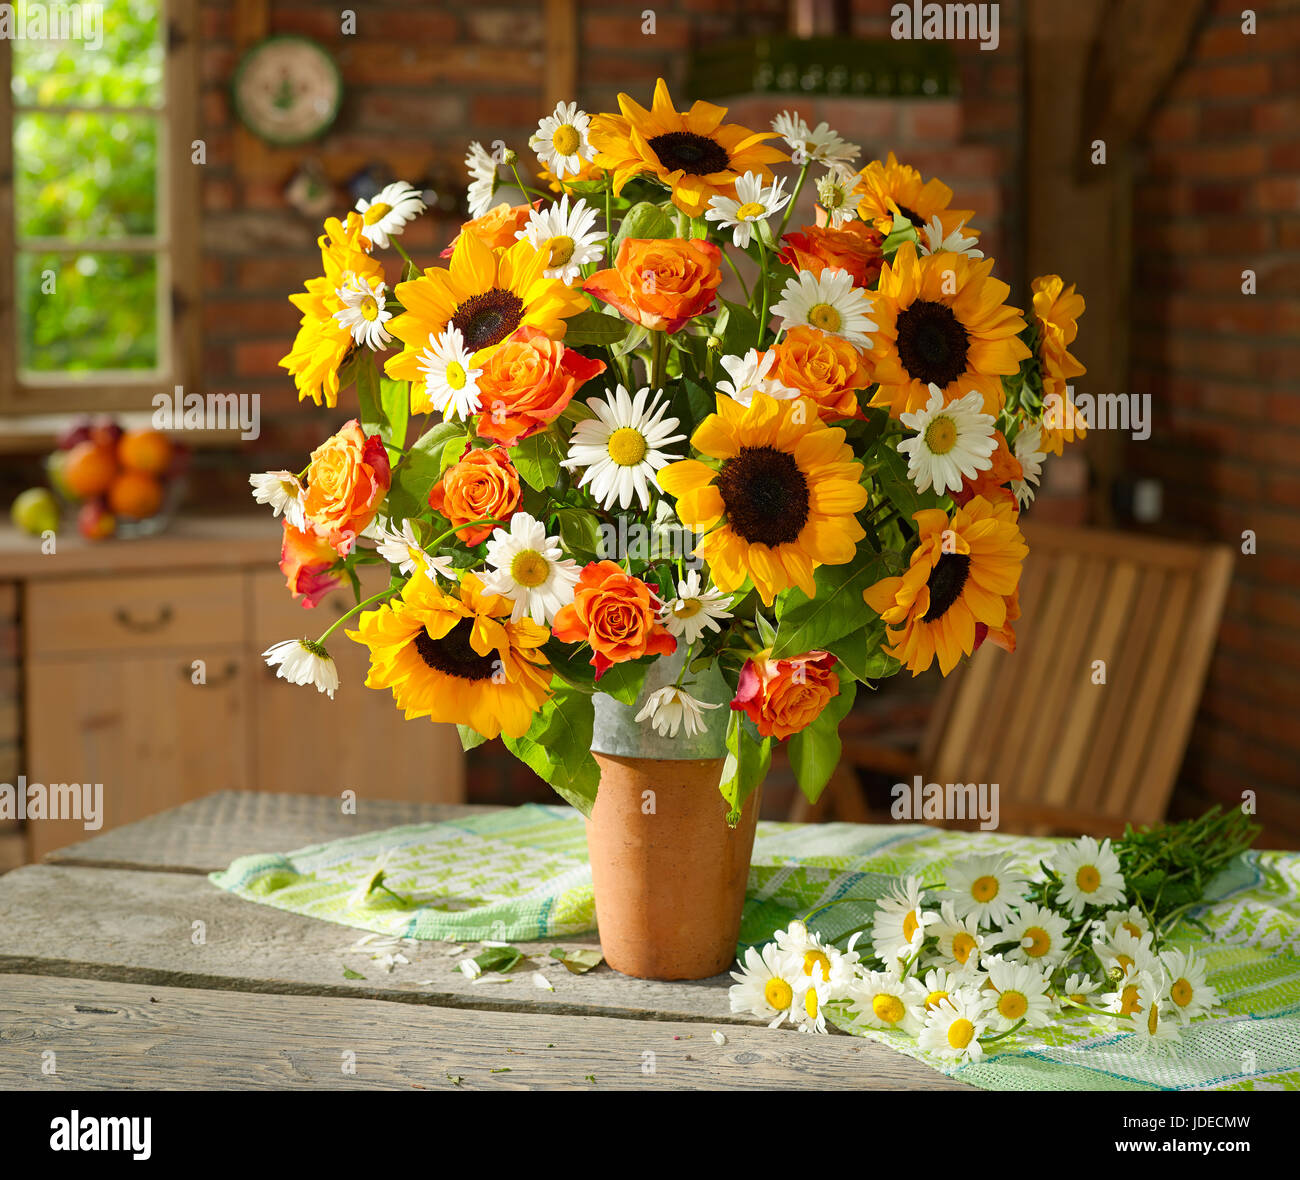 Blumenstrauß mit Sonnenblumen und Rosen Stockfotografie - Alamy